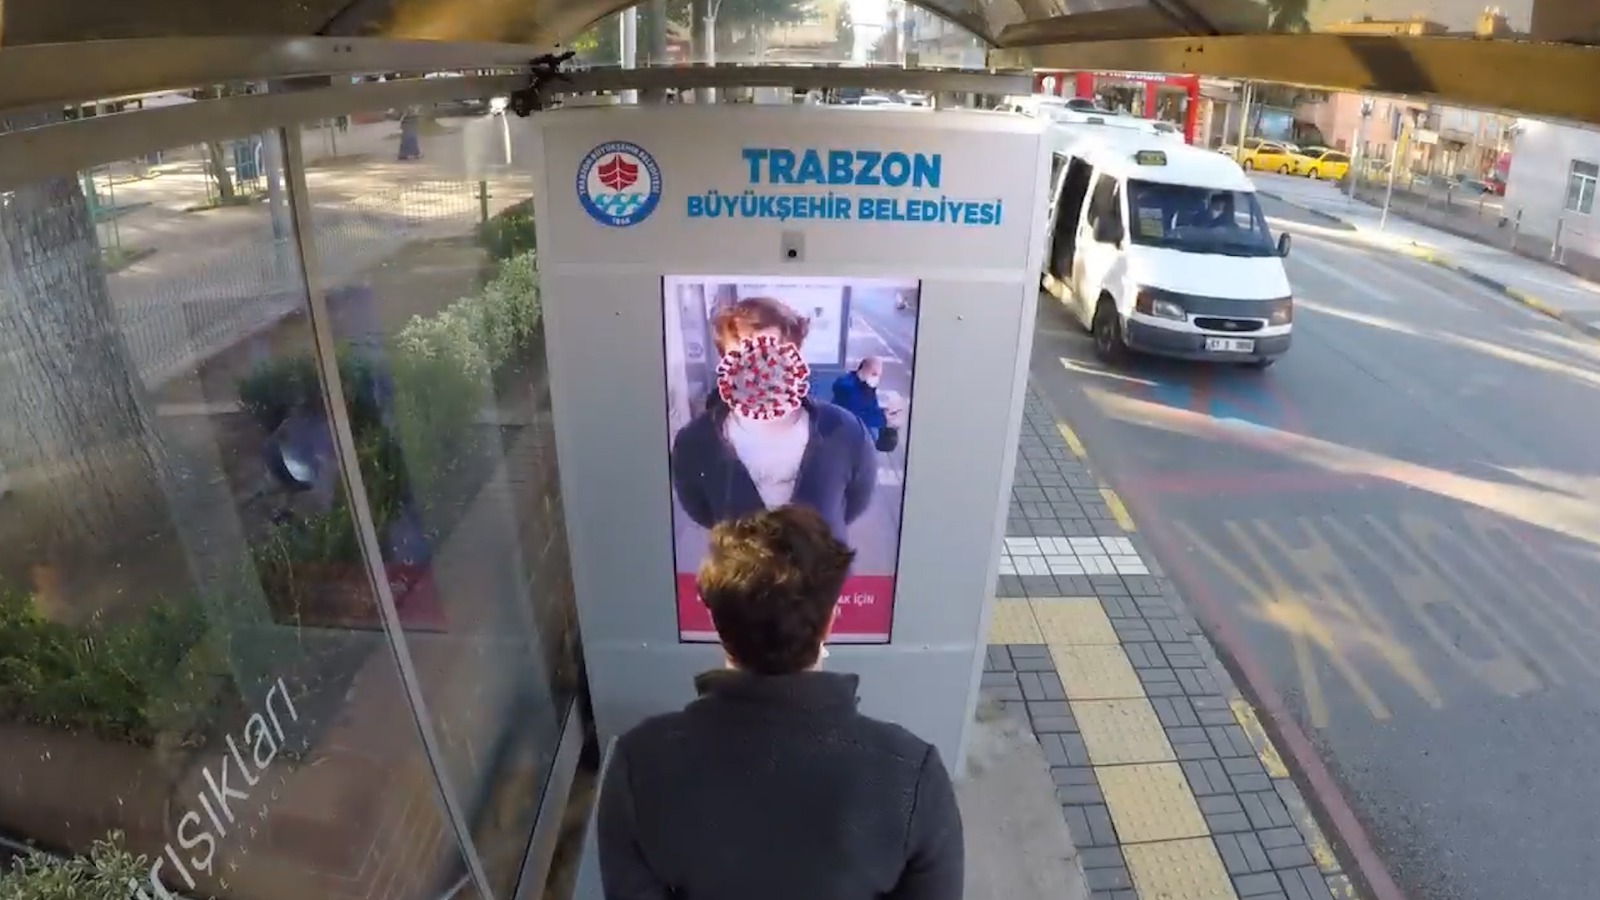 sds - فيديو طريف لبلدية تركية تحث مواطنيها على الإلتزام بإرتداء الكمامة